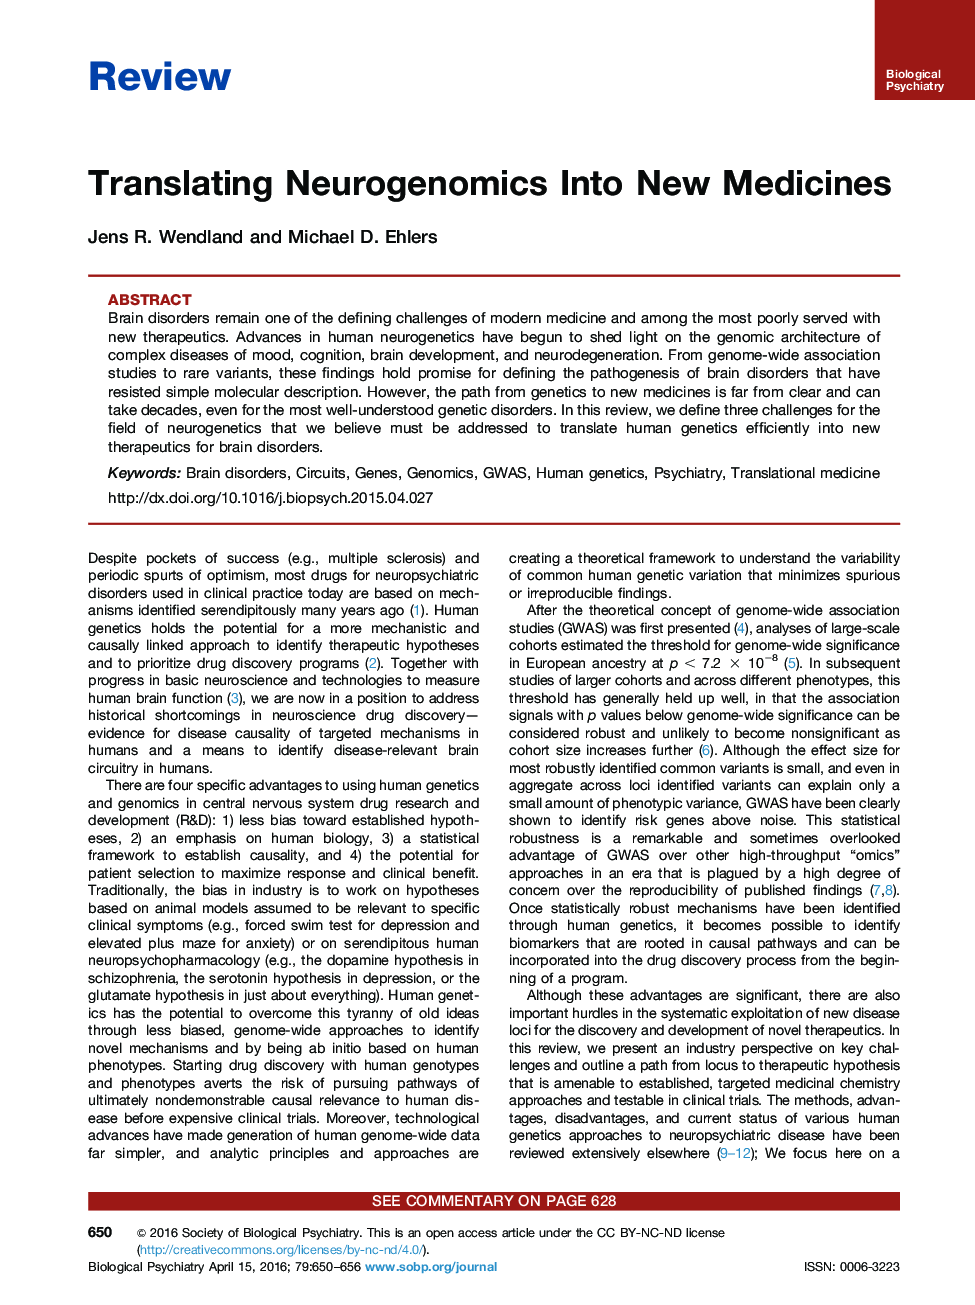 انتقال نوروژنومیک به داروهای جدید 